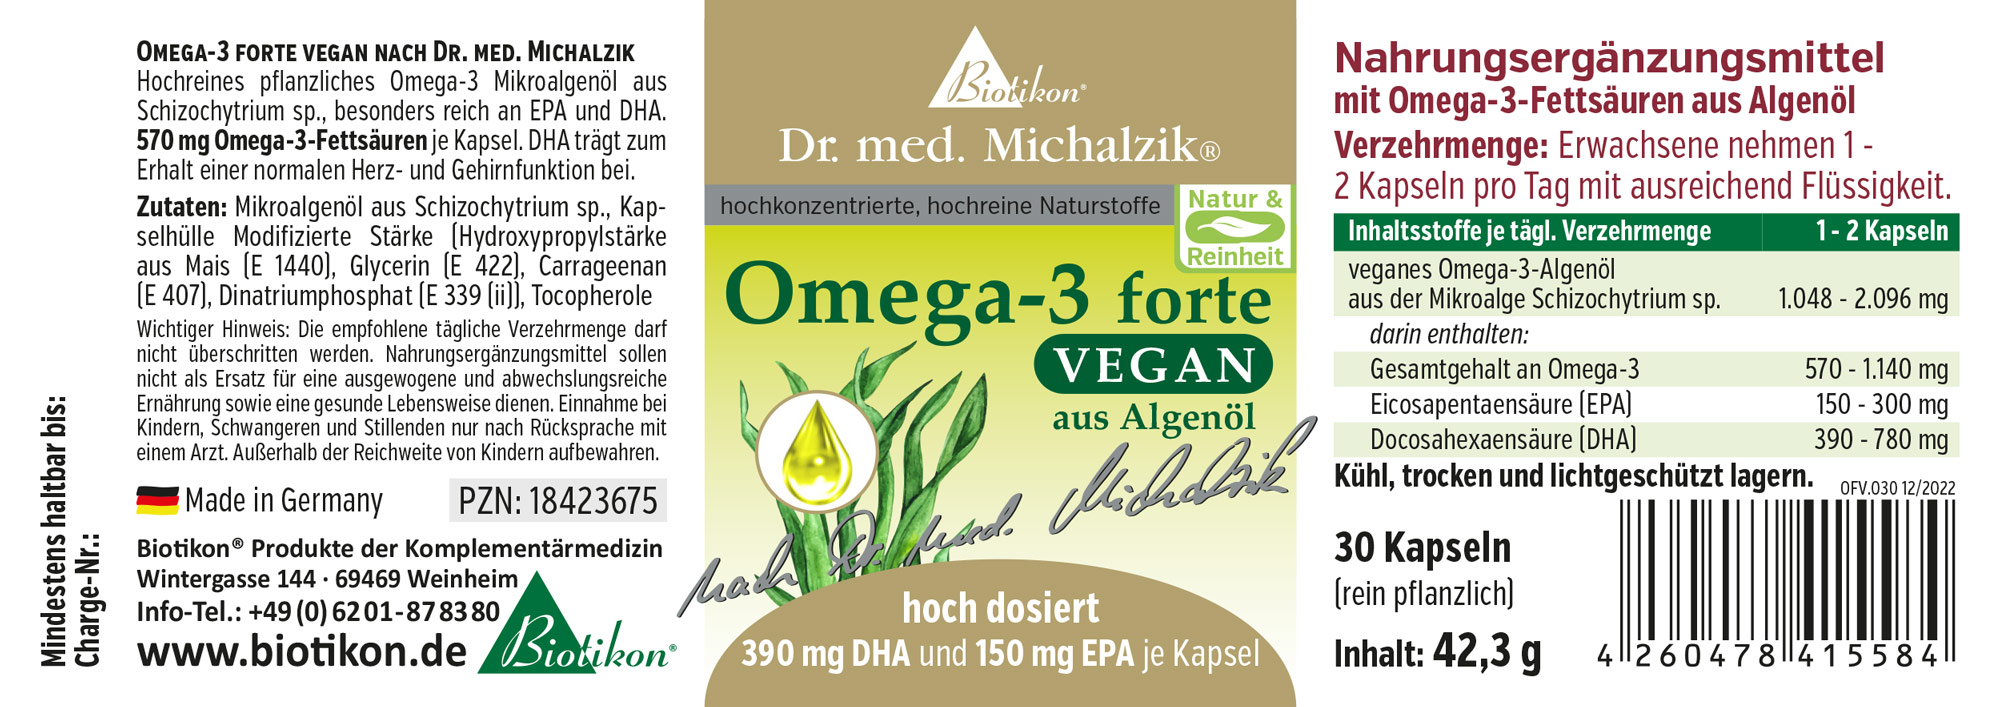 Omega-3 forte vegan - 30 Kapseln